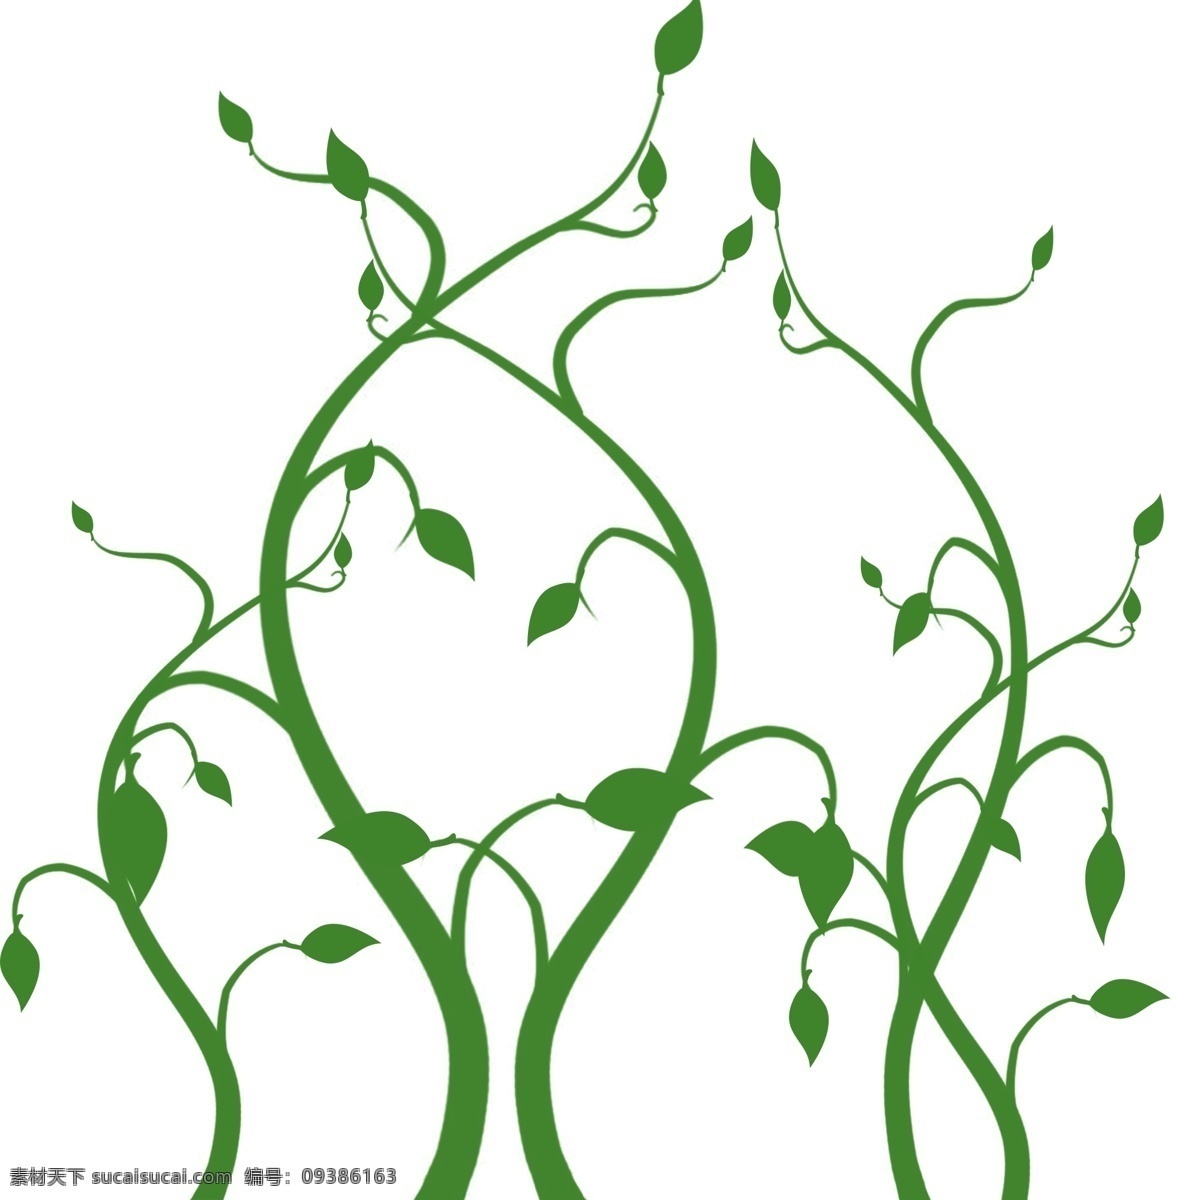 手绘 立体 热带 植物 绿色 树叶 叶子 立体绿色 植物叶子 热带植物